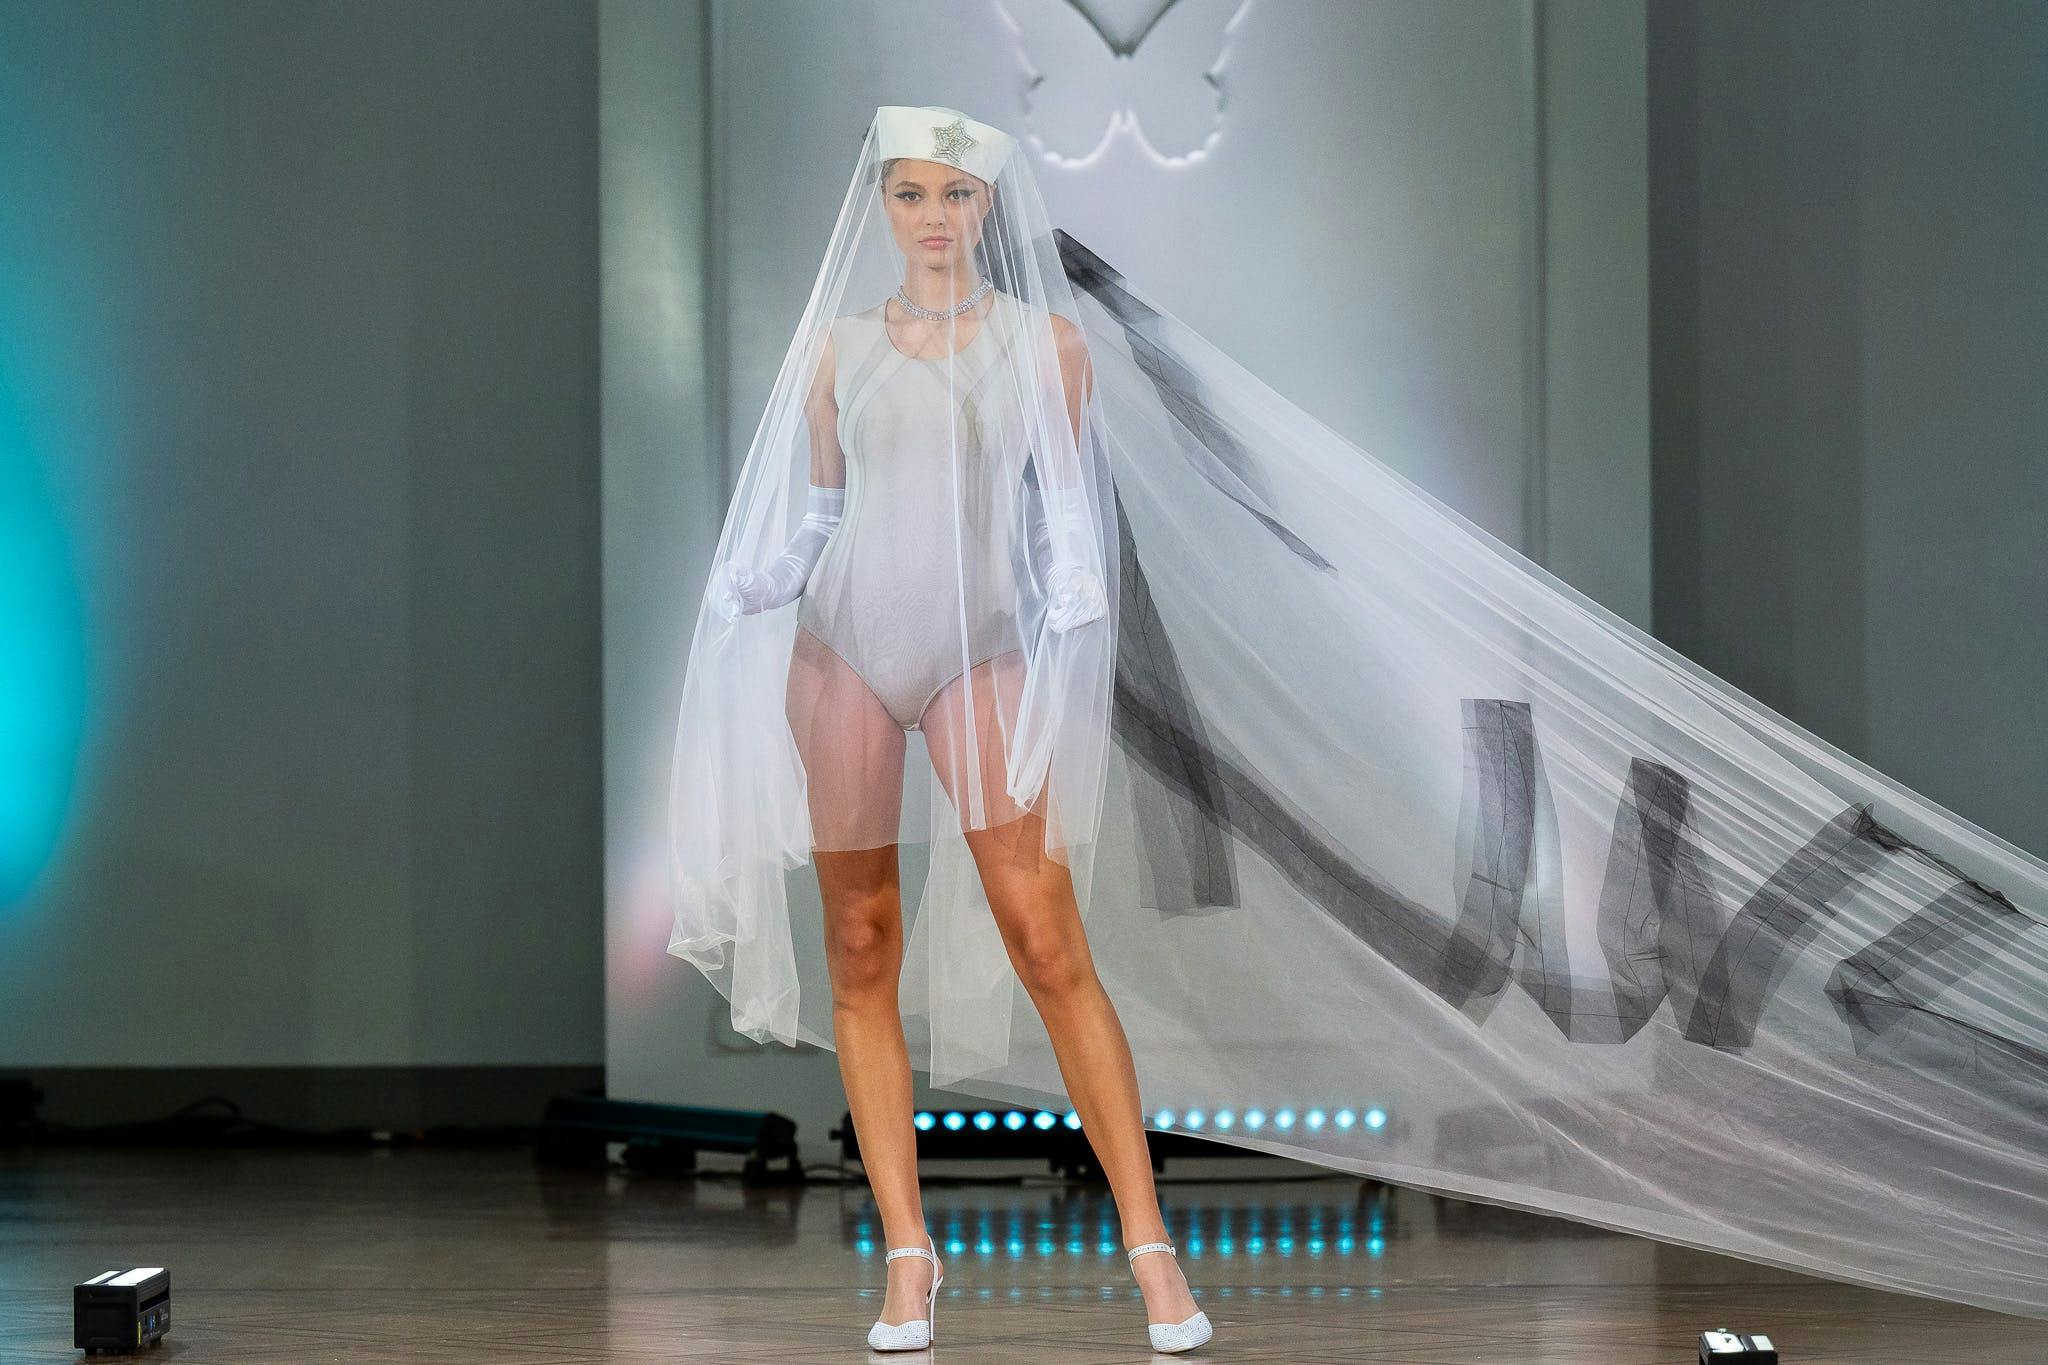 fashion bridal veil clothing dress formal wear gown person wedding wedding gown